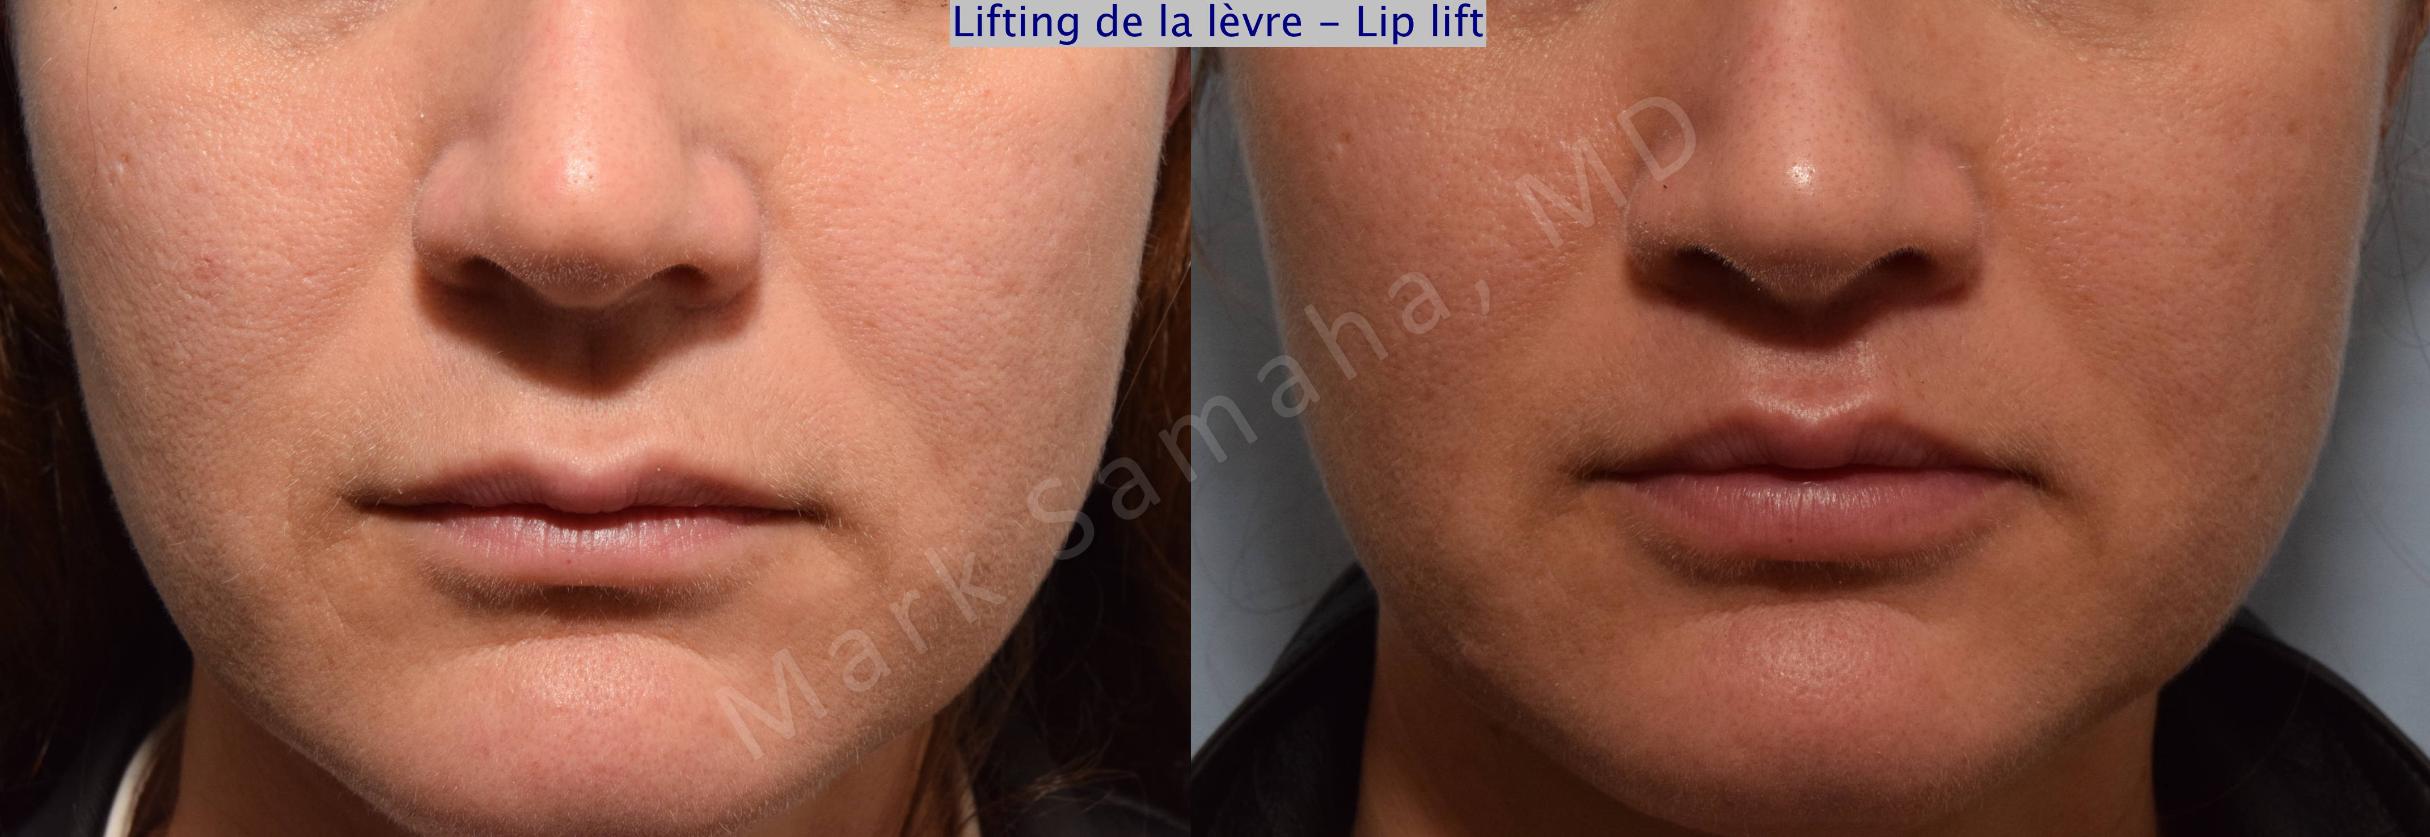 Before & After Lifting de la lèvre supérieure / Lip Lift  Case 70 View #1 View in Mount Royal, QC